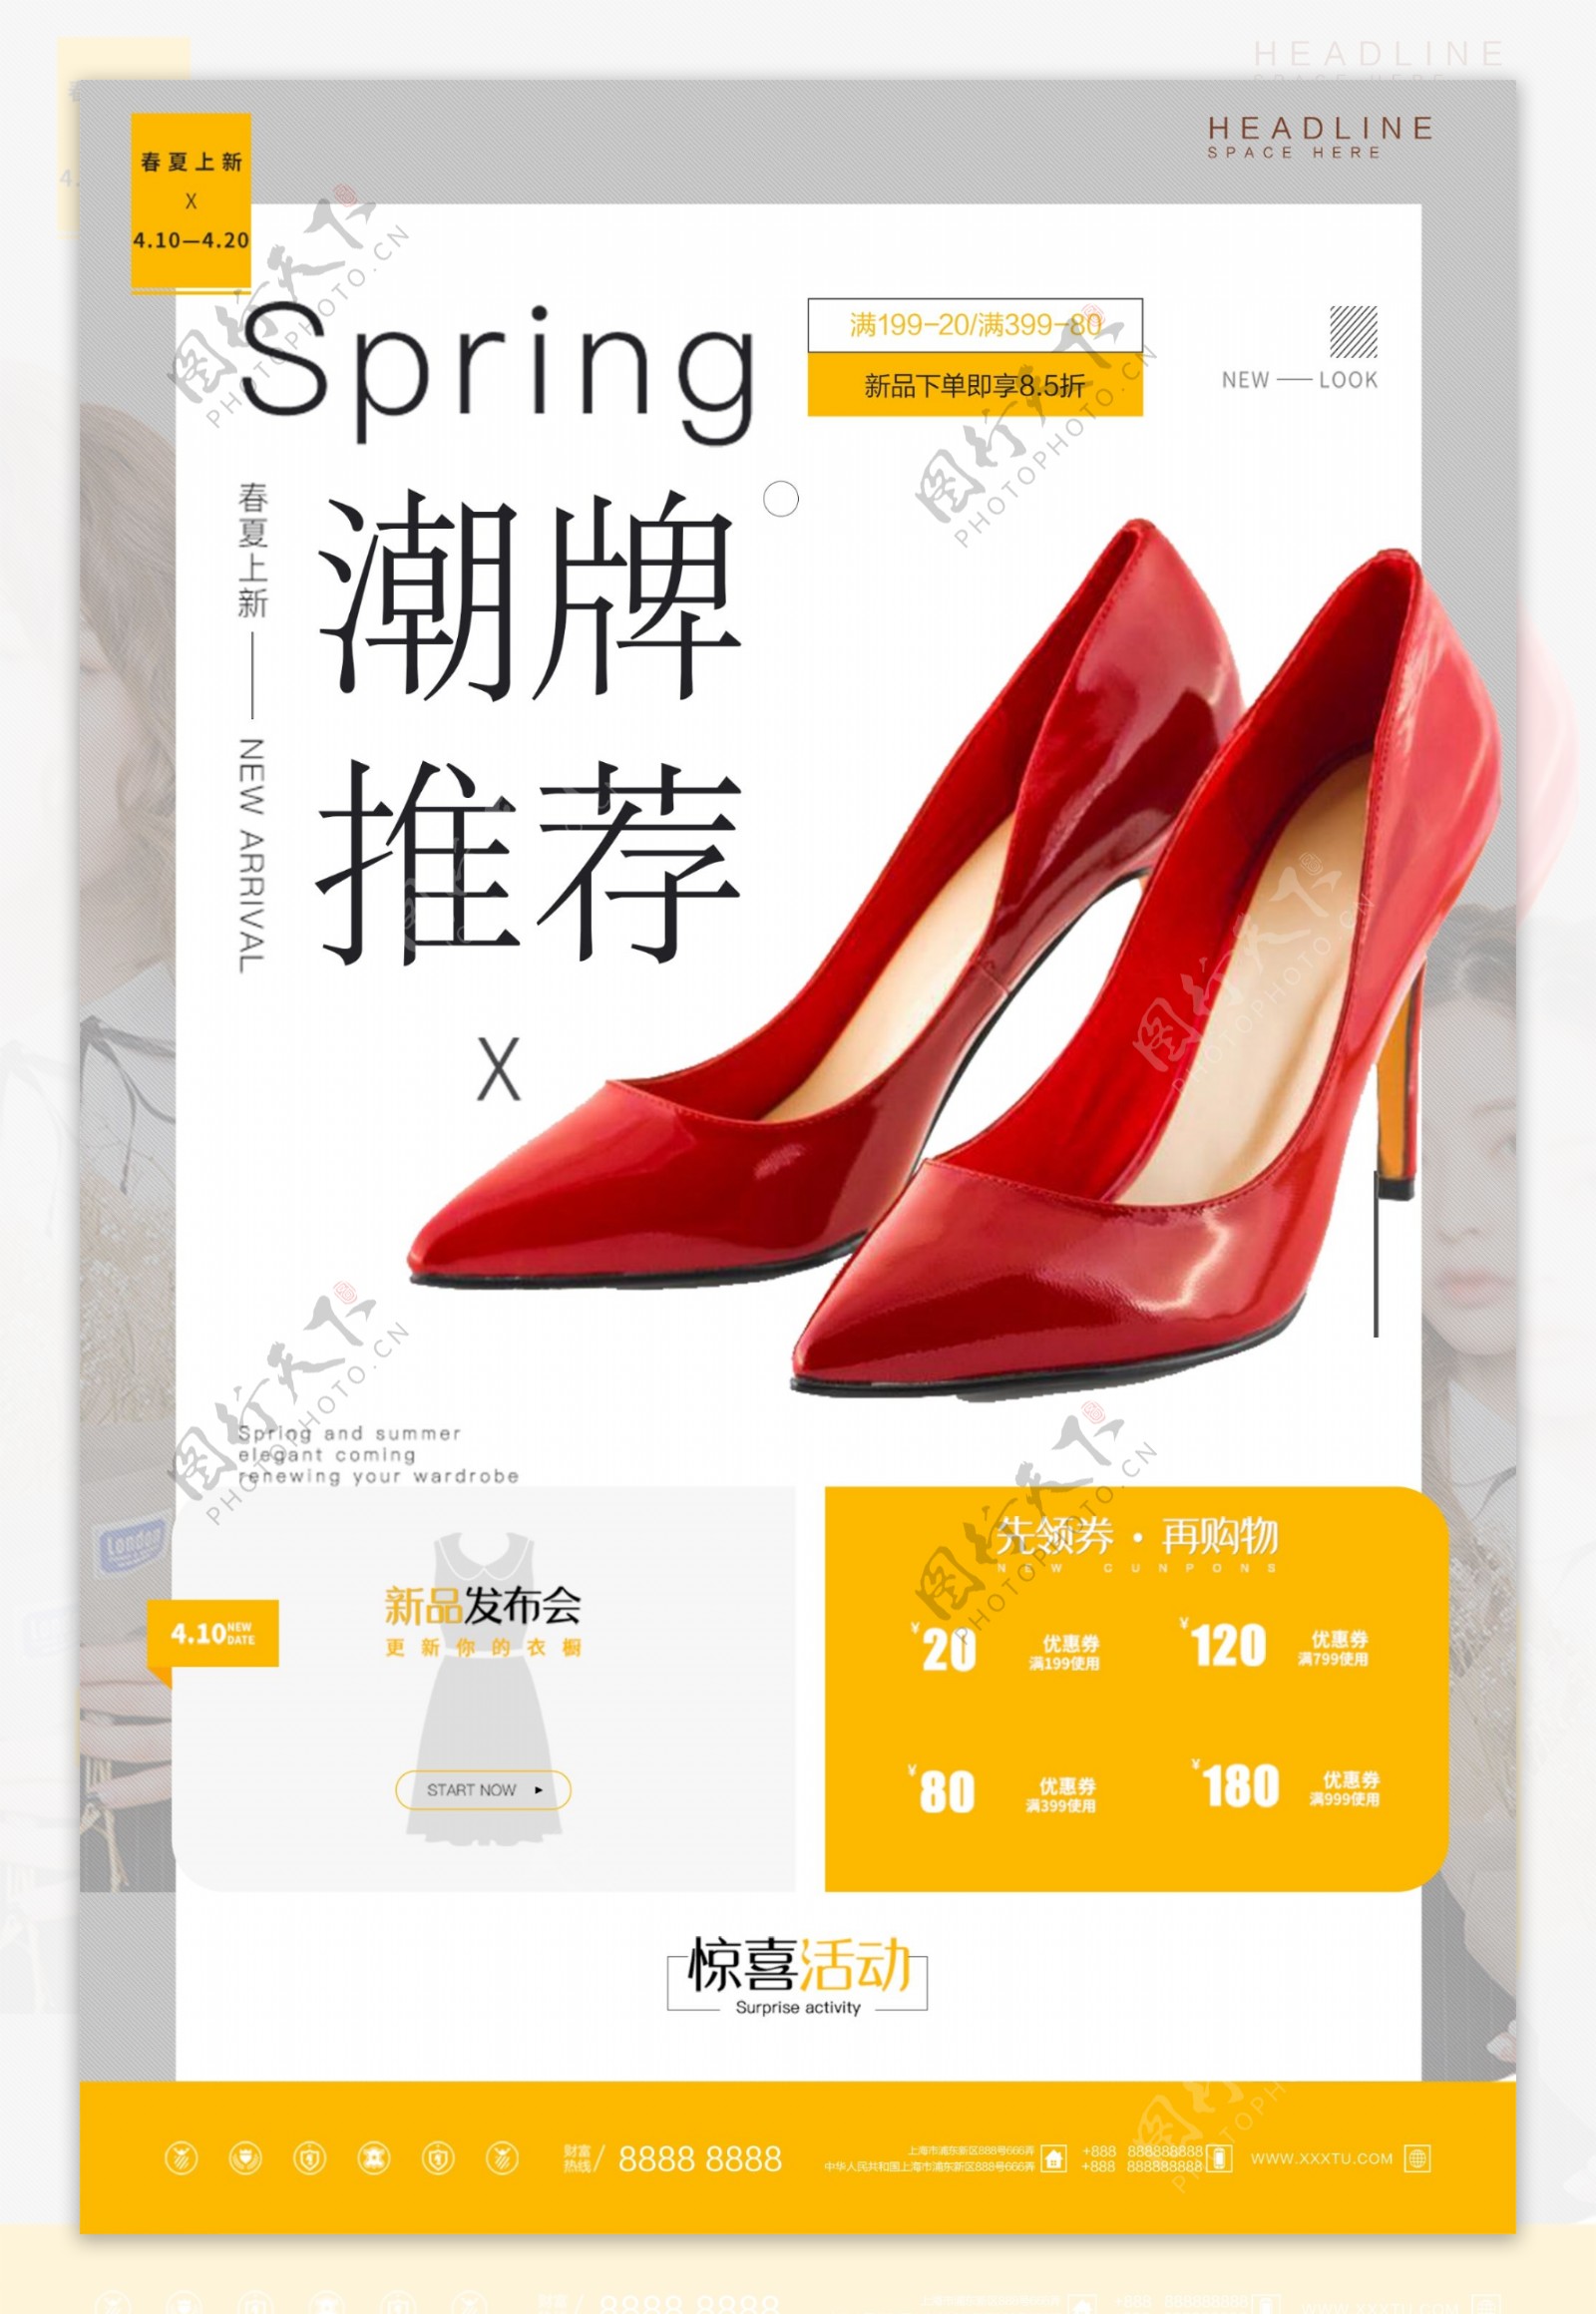 炫彩时尚潮流女鞋促销宣传海报设计